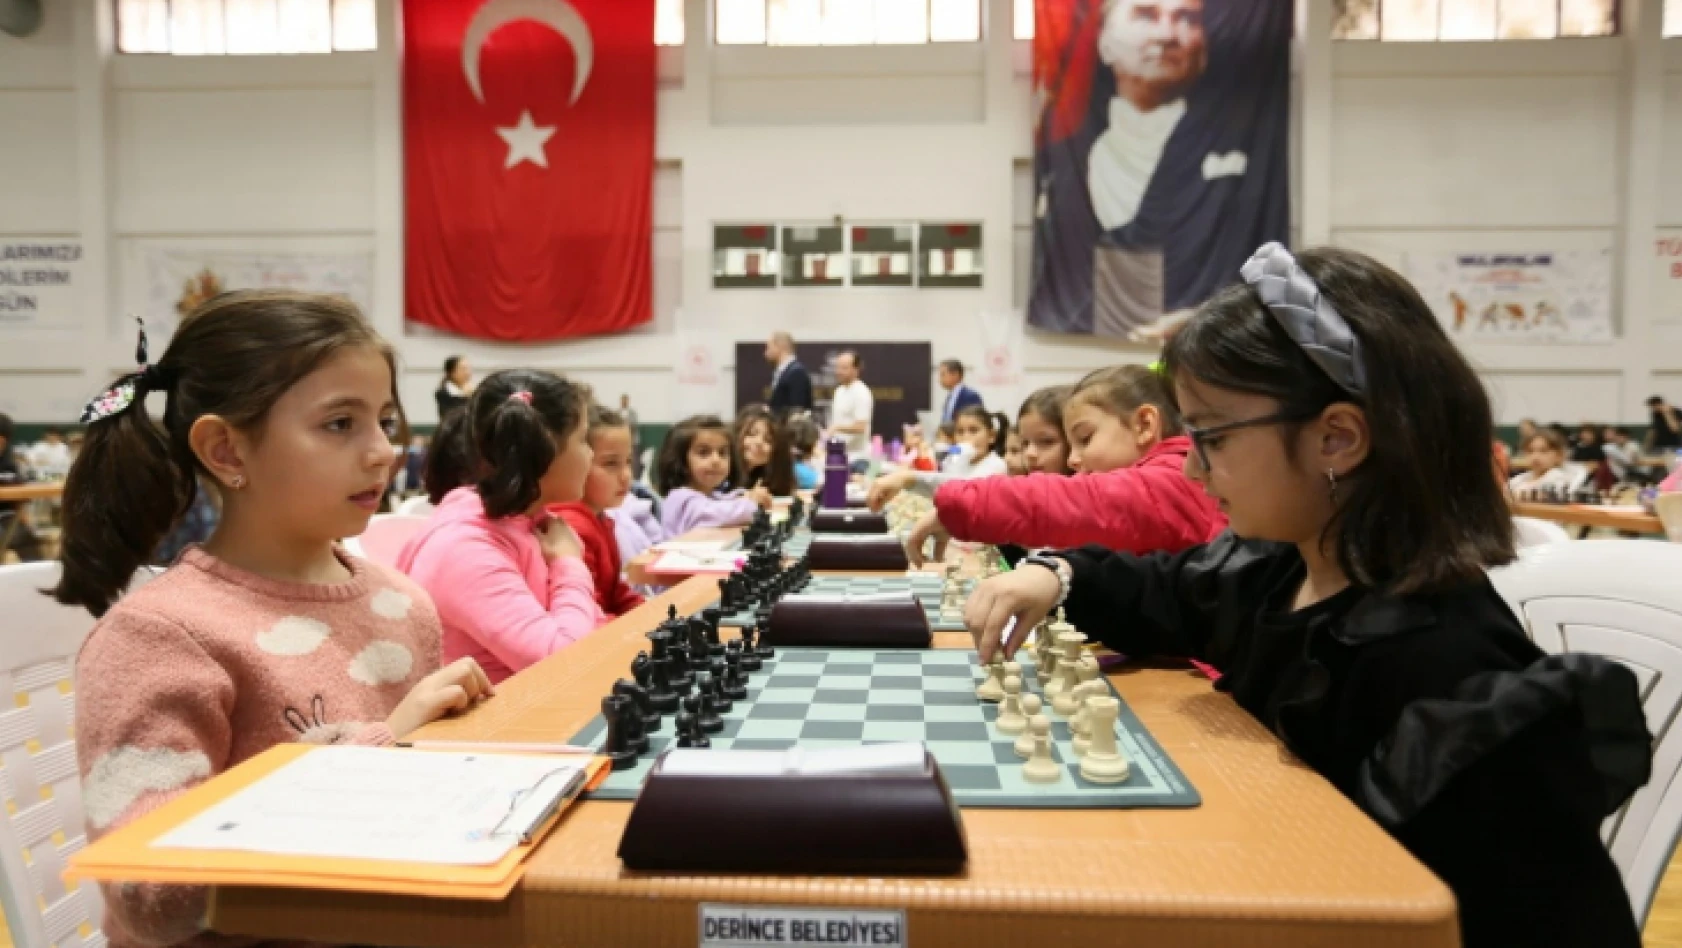 Minik öğrencilerin satranç turnuvası renkli görüntülere sahne oldu